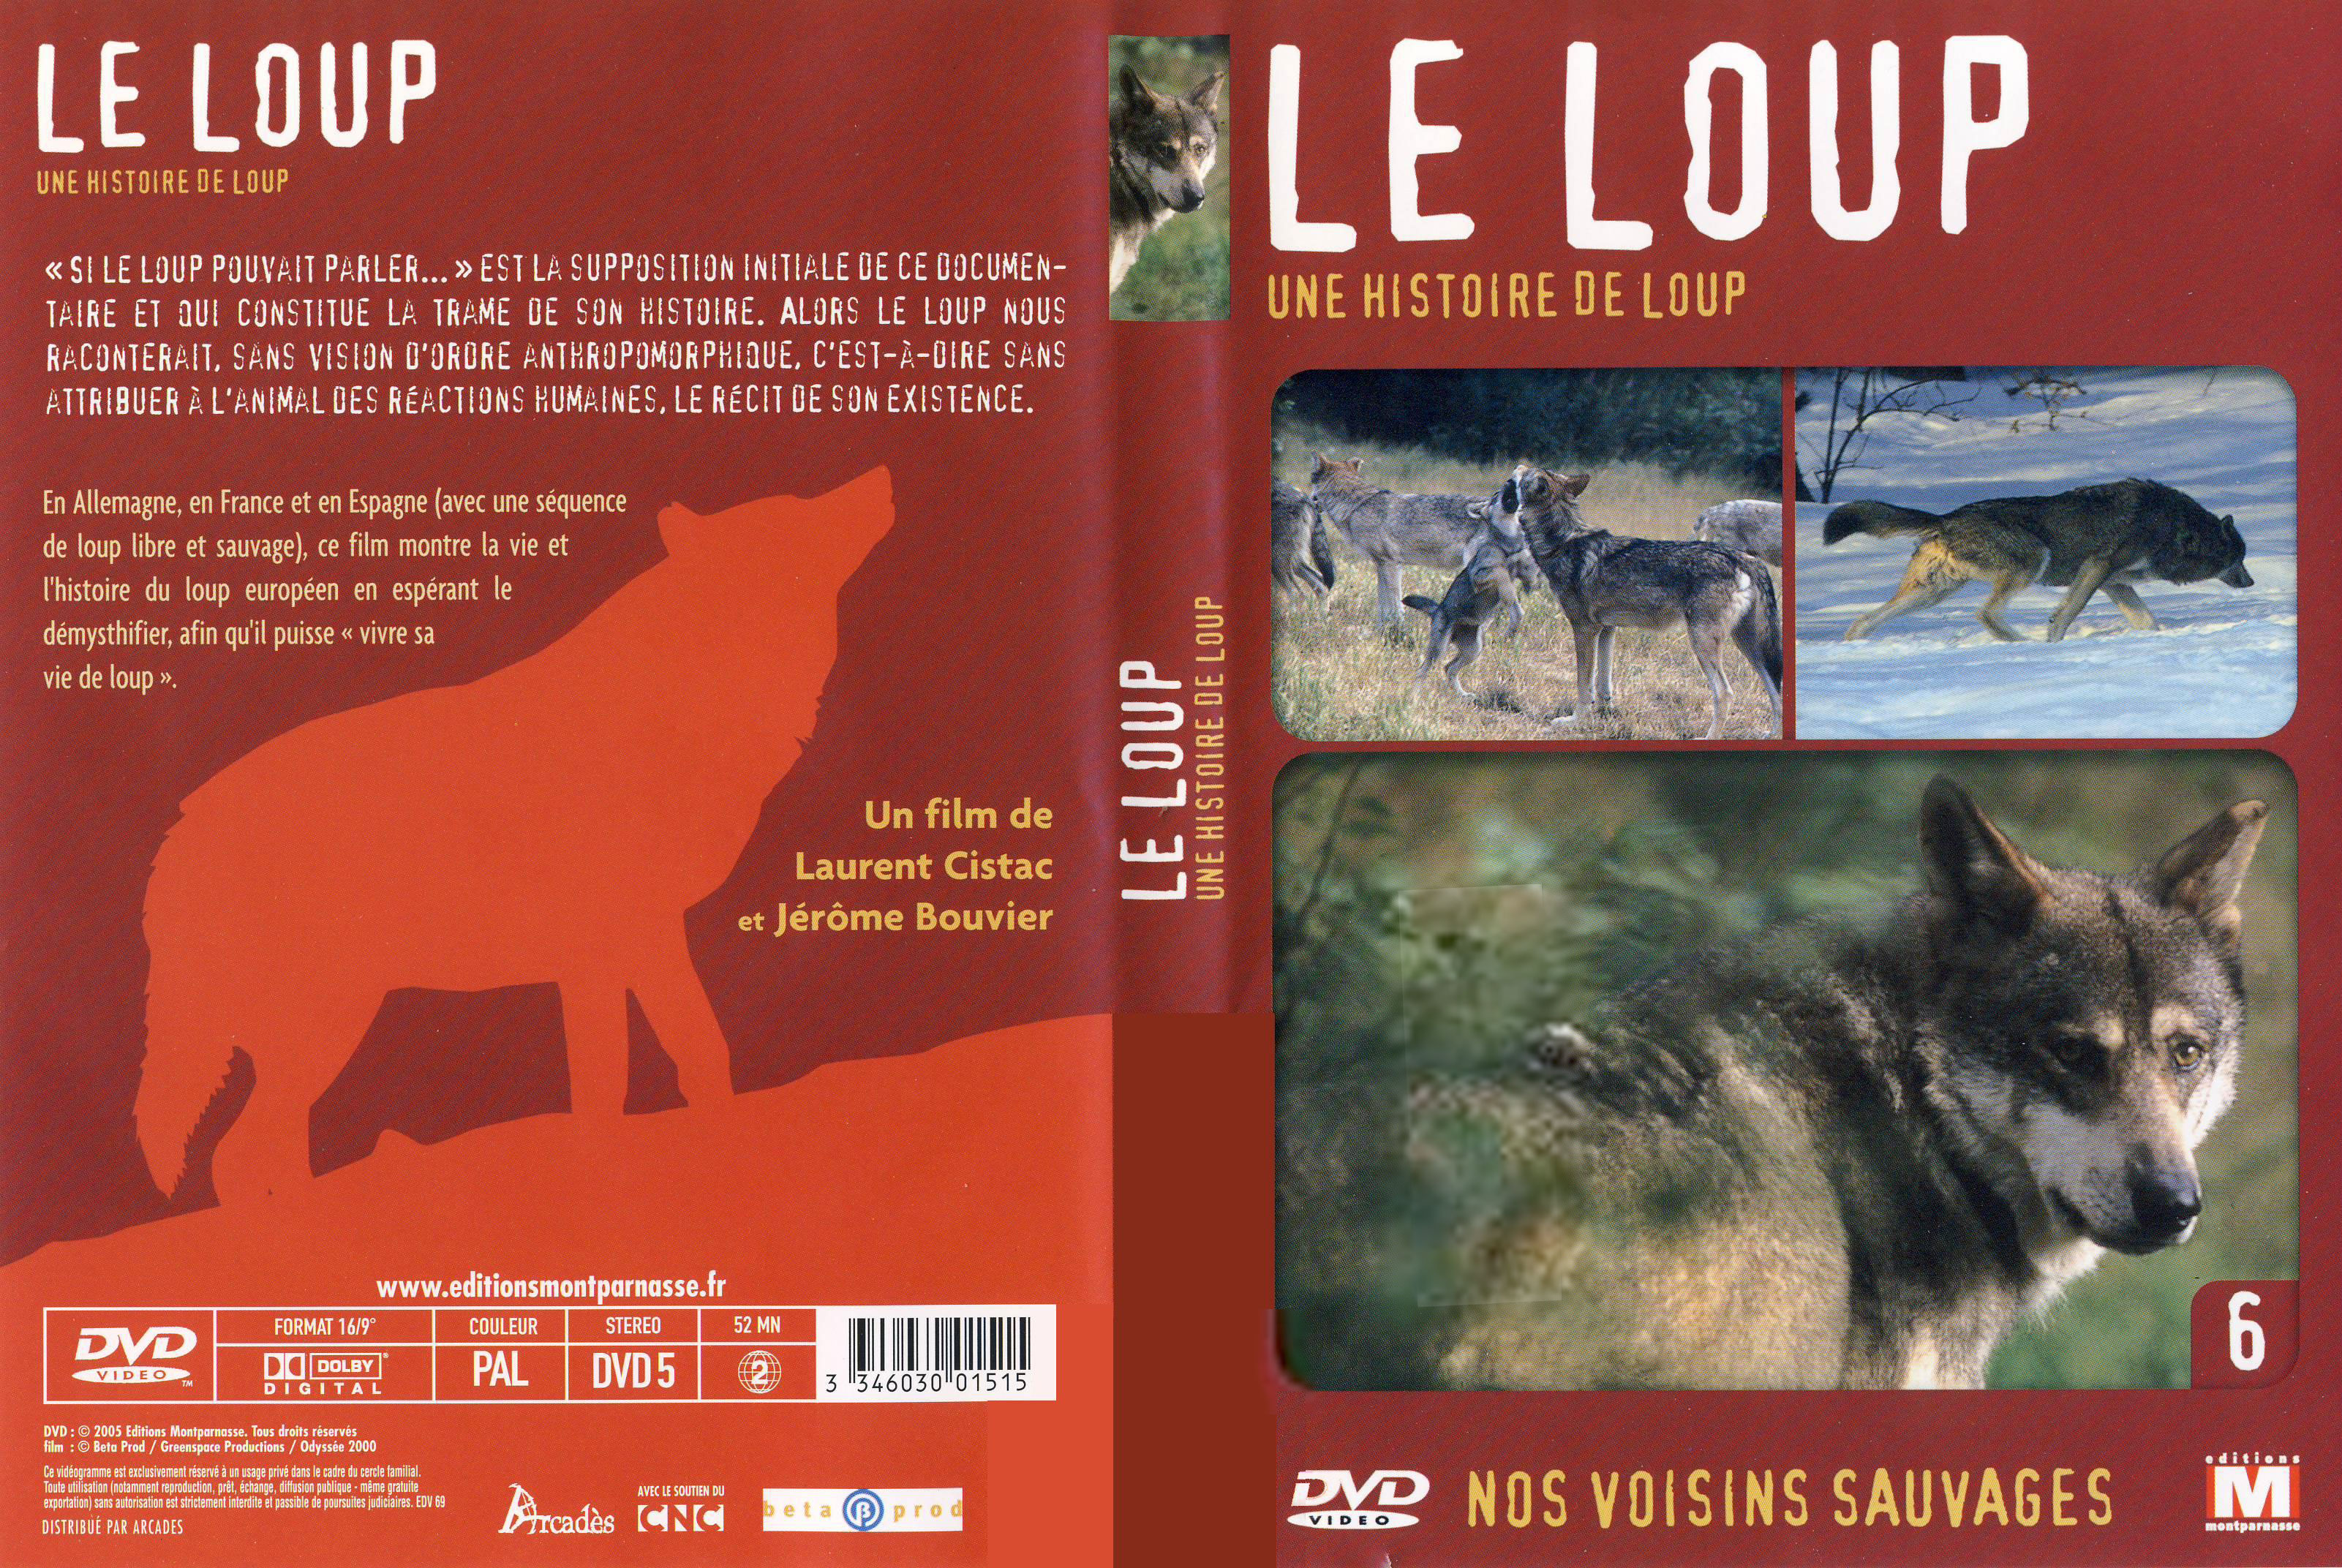 Jaquette DVD Le loup Une histoire de loup